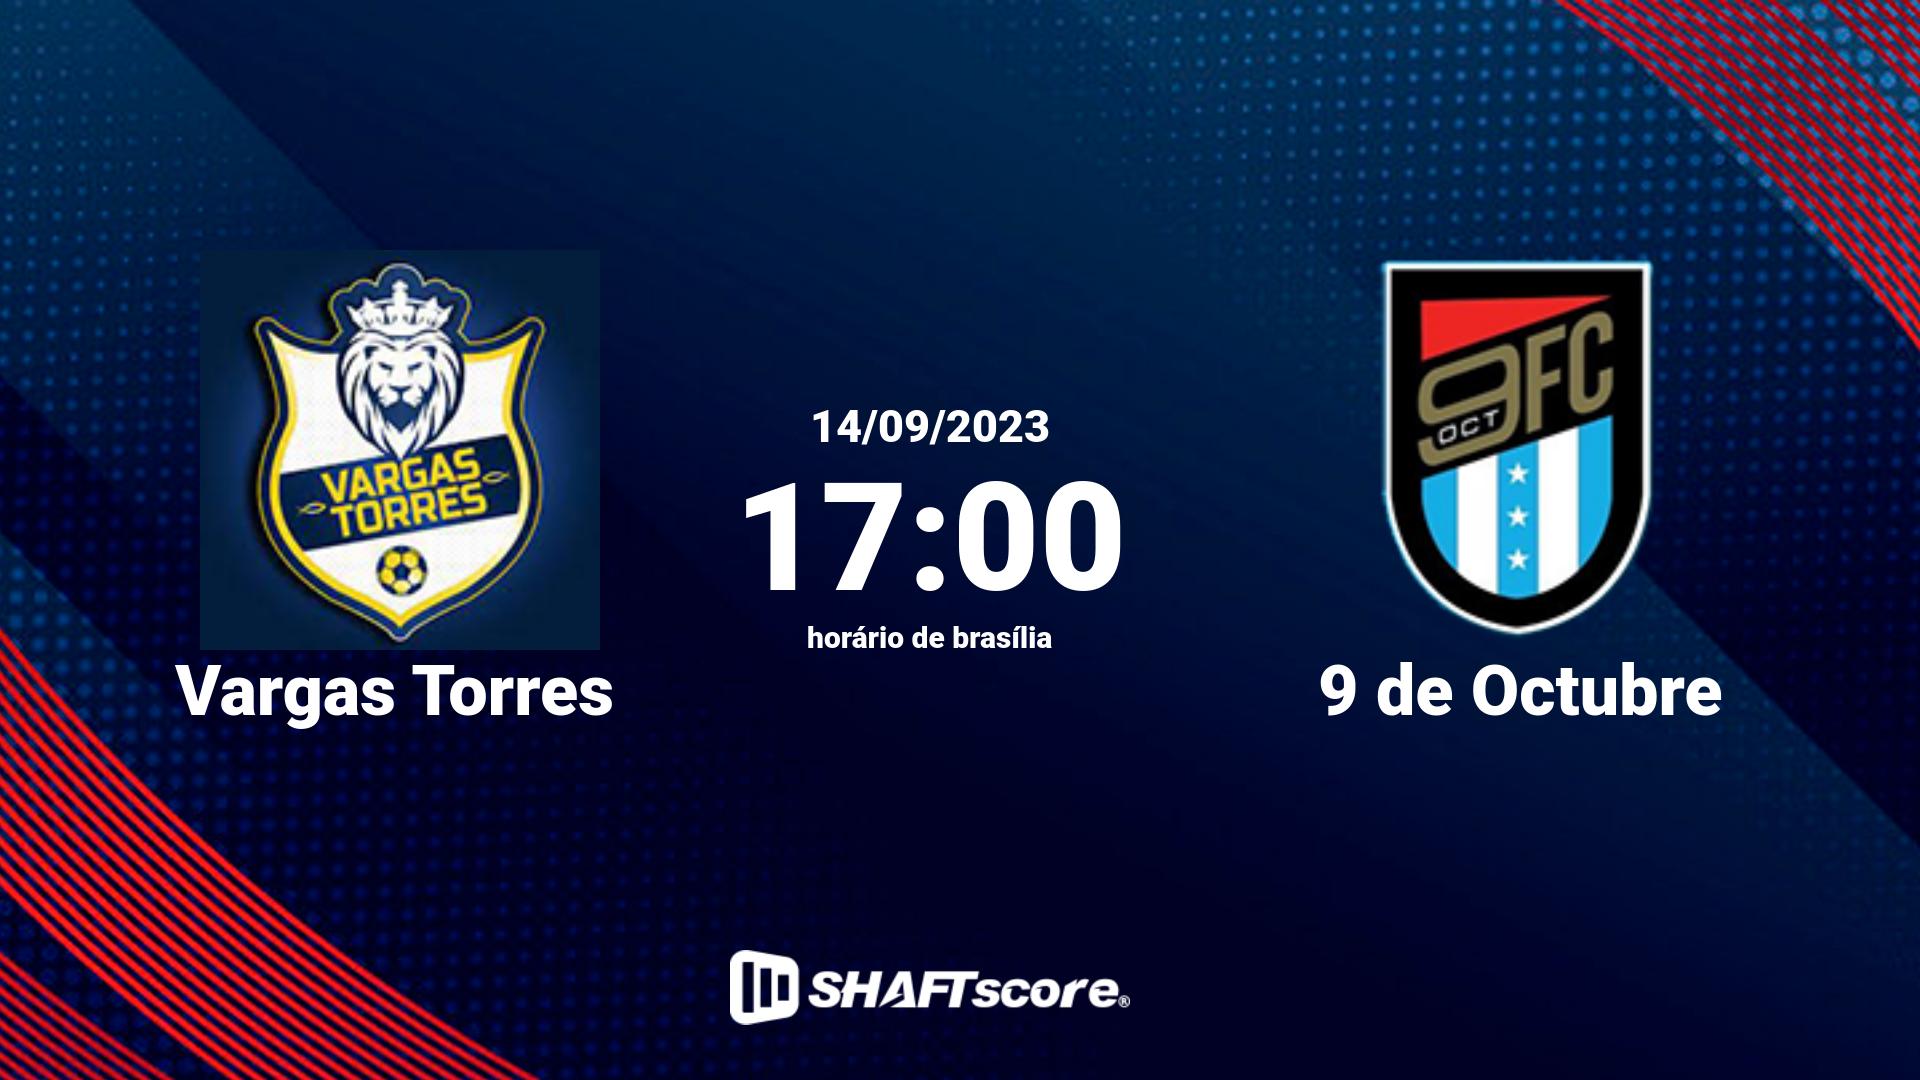 Estatísticas do jogo Vargas Torres vs 9 de Octubre 14.09 17:00